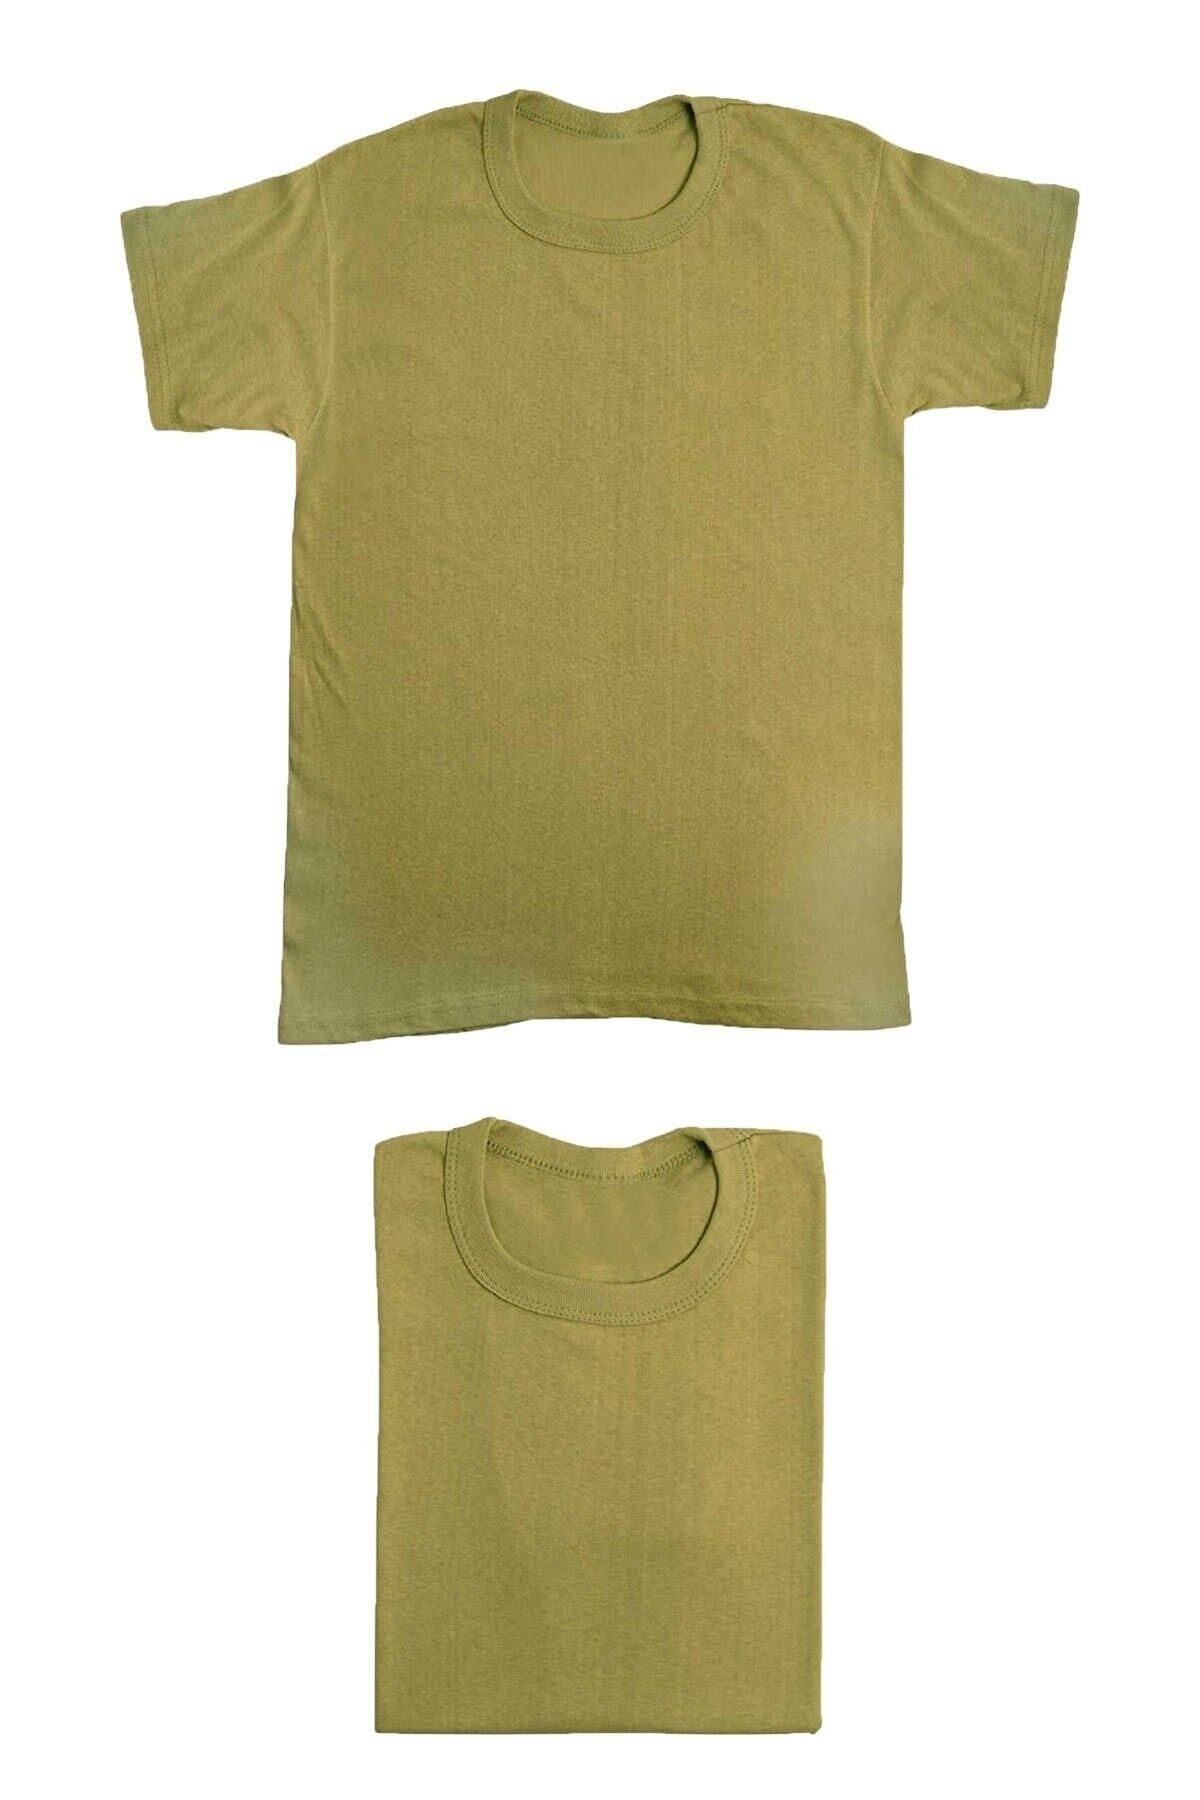 Bakbuldum Karacı Sıfır Yaka T-shirt Askeri Atlet - Yeni Tip Nano Renk